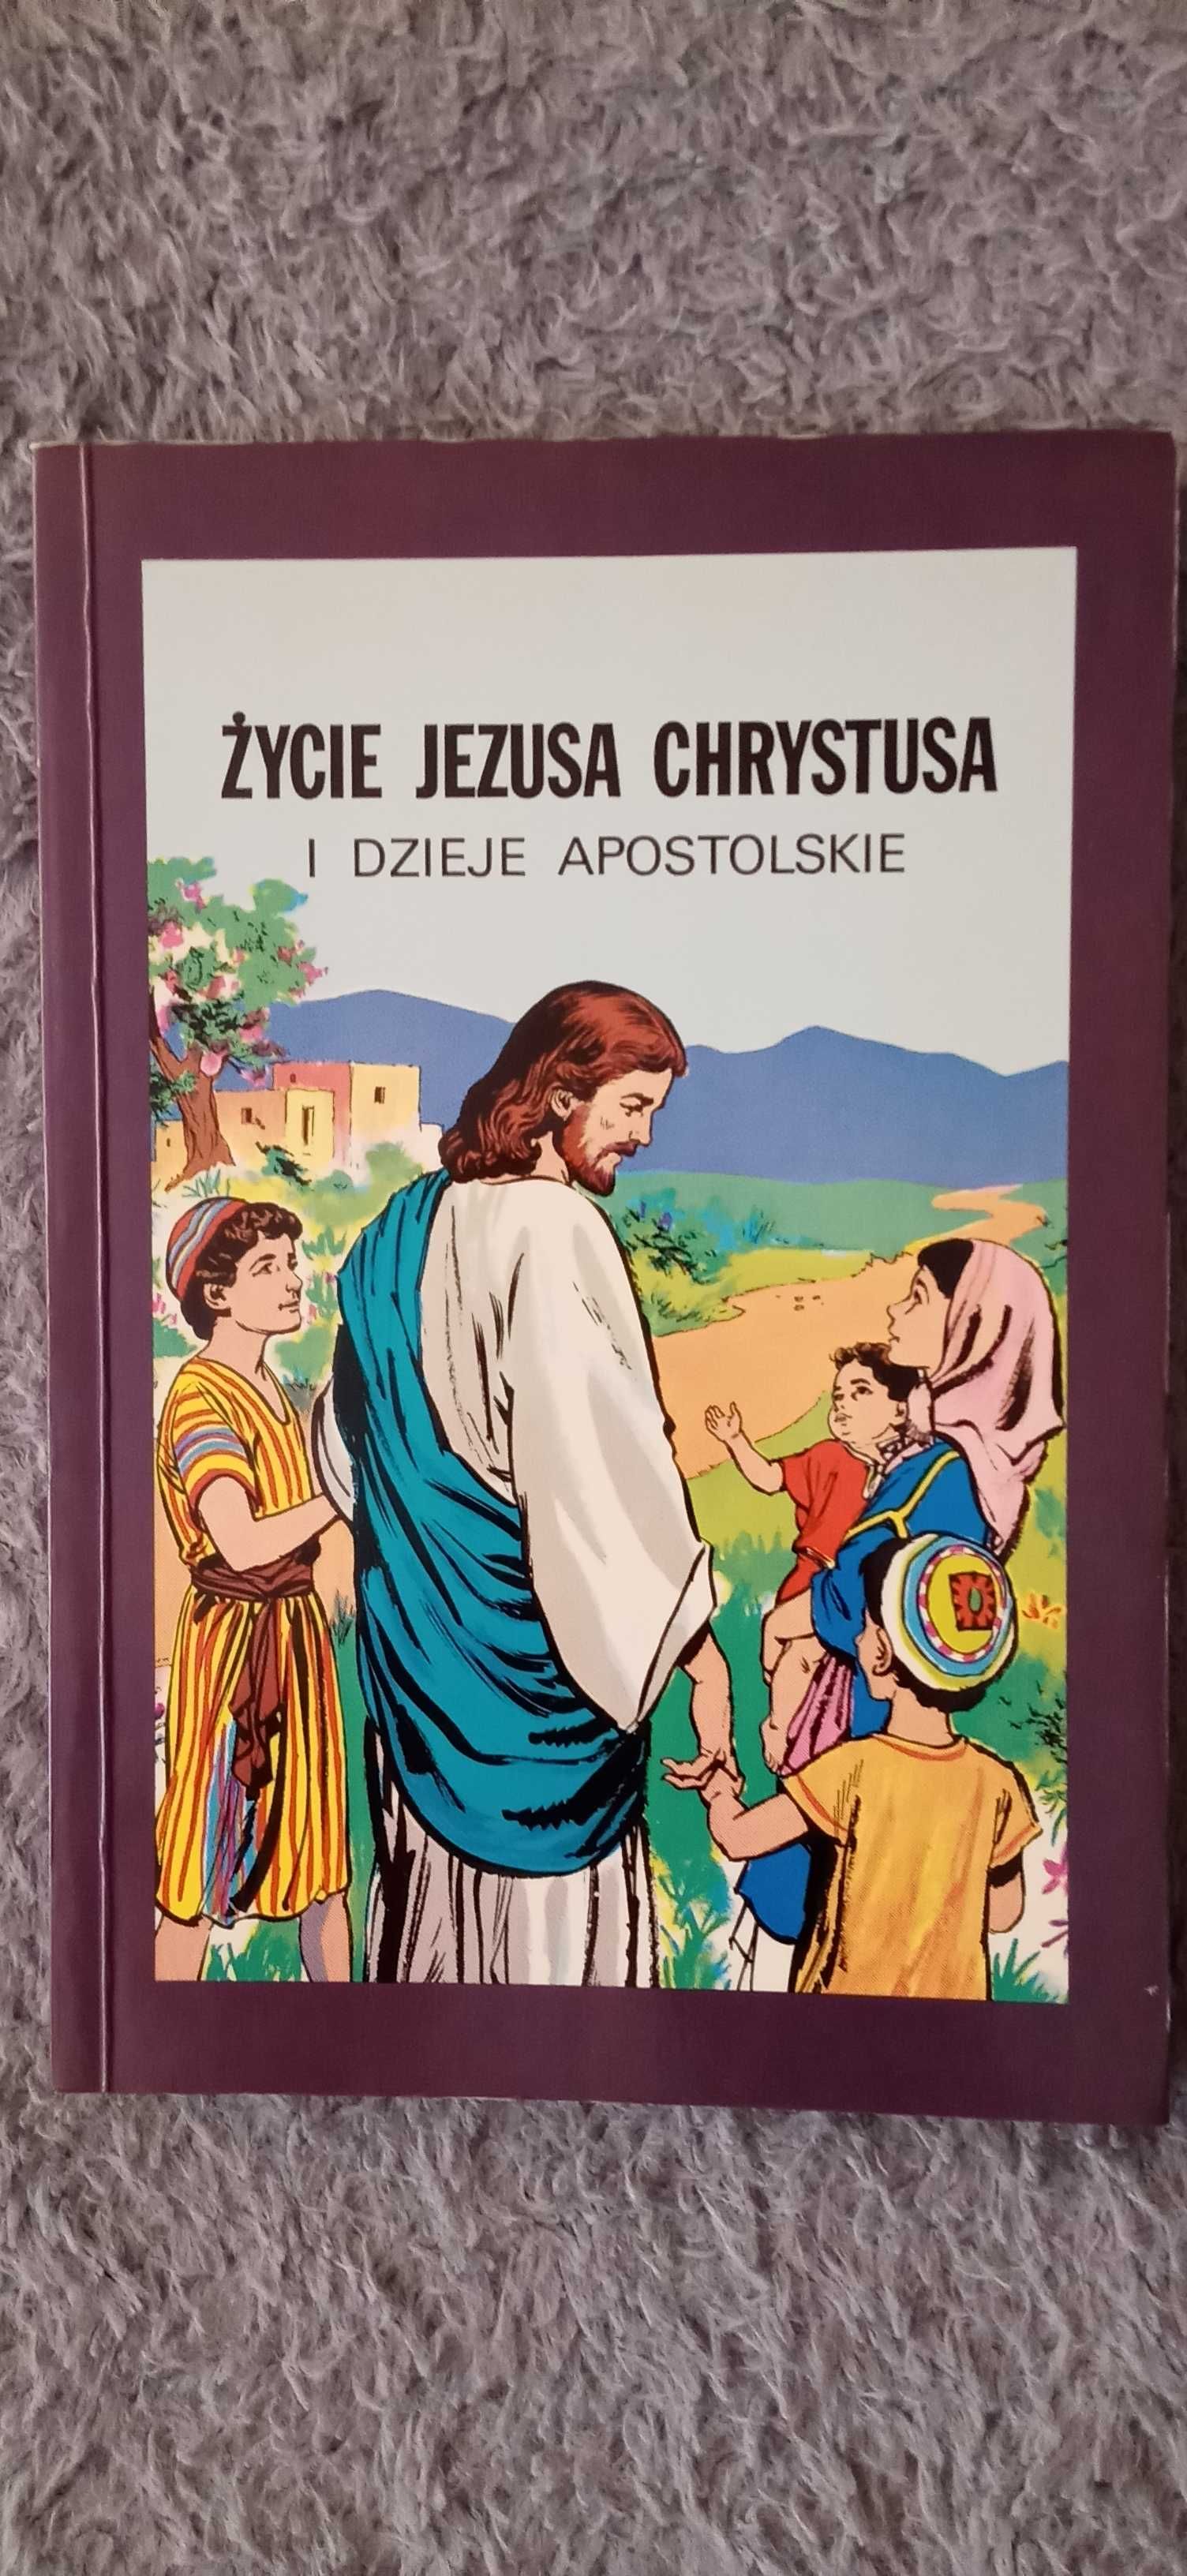 Życie Jezusa Chrystusa - książka w formie komiksu